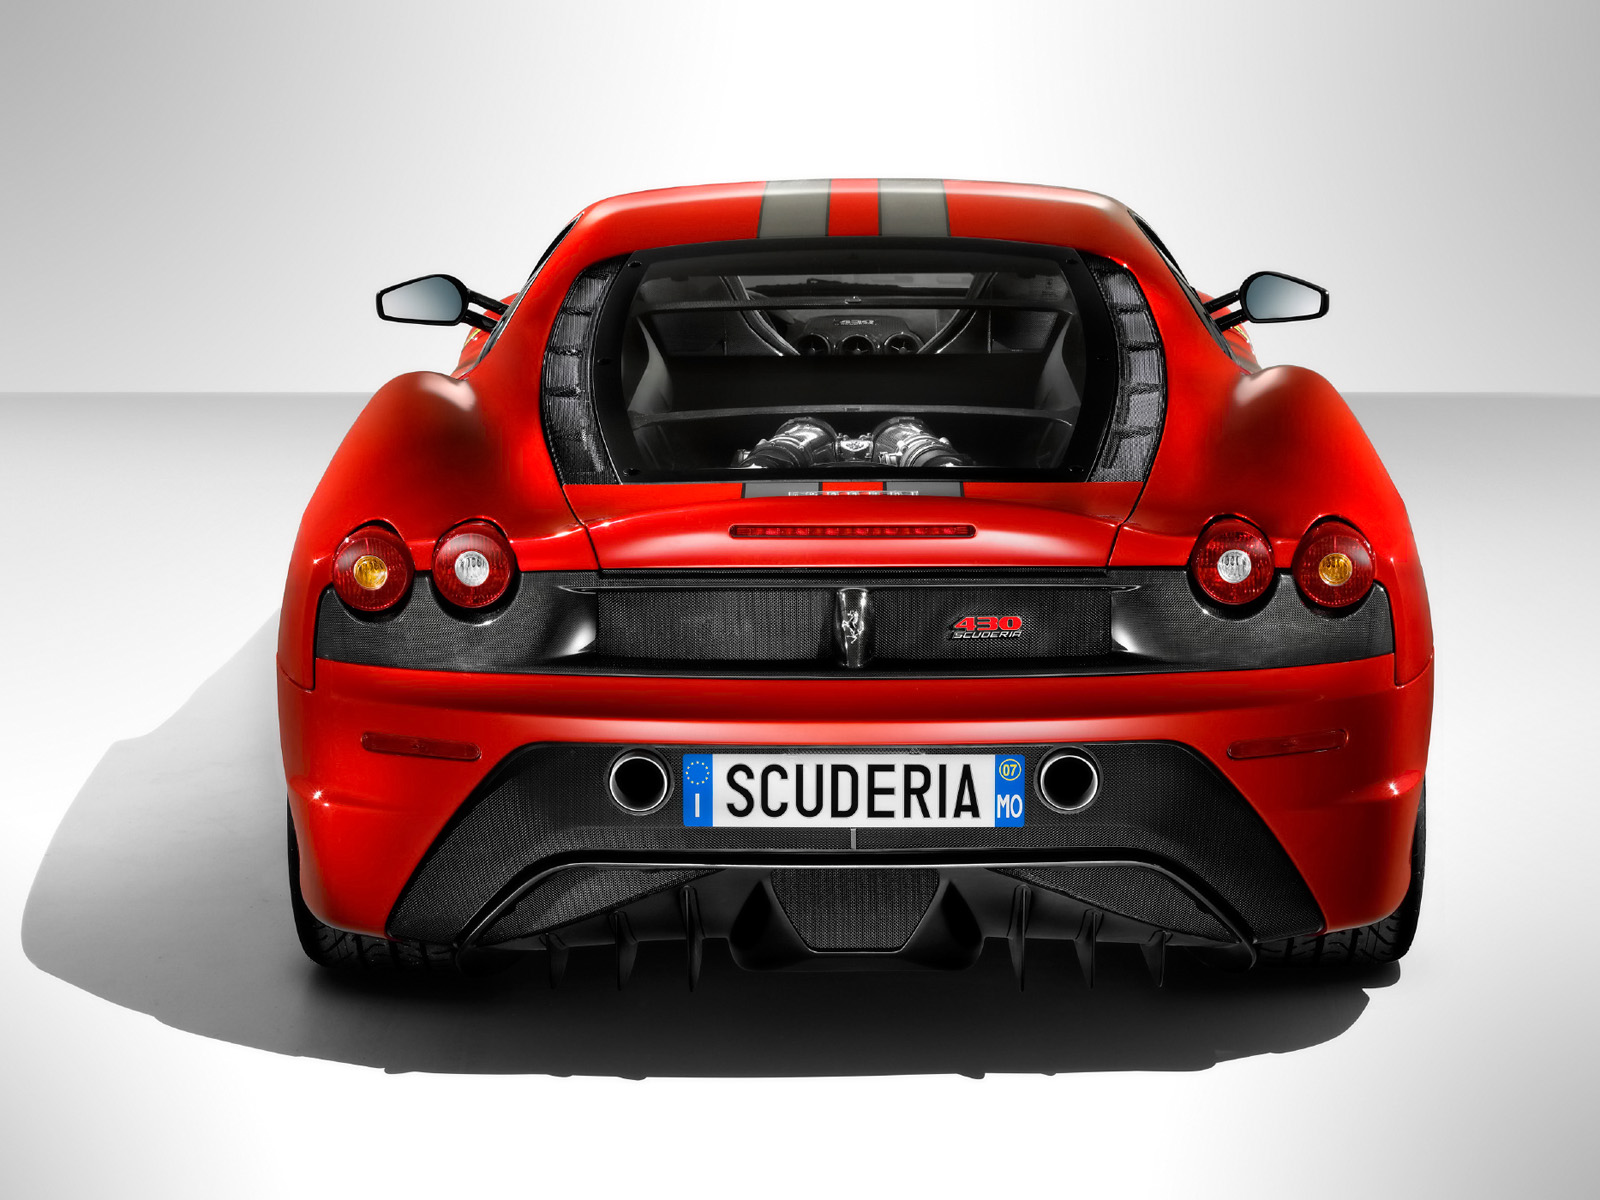 Download full size 2008 430 Scuderia Rear Ferrari wallpaper / 1600x1200